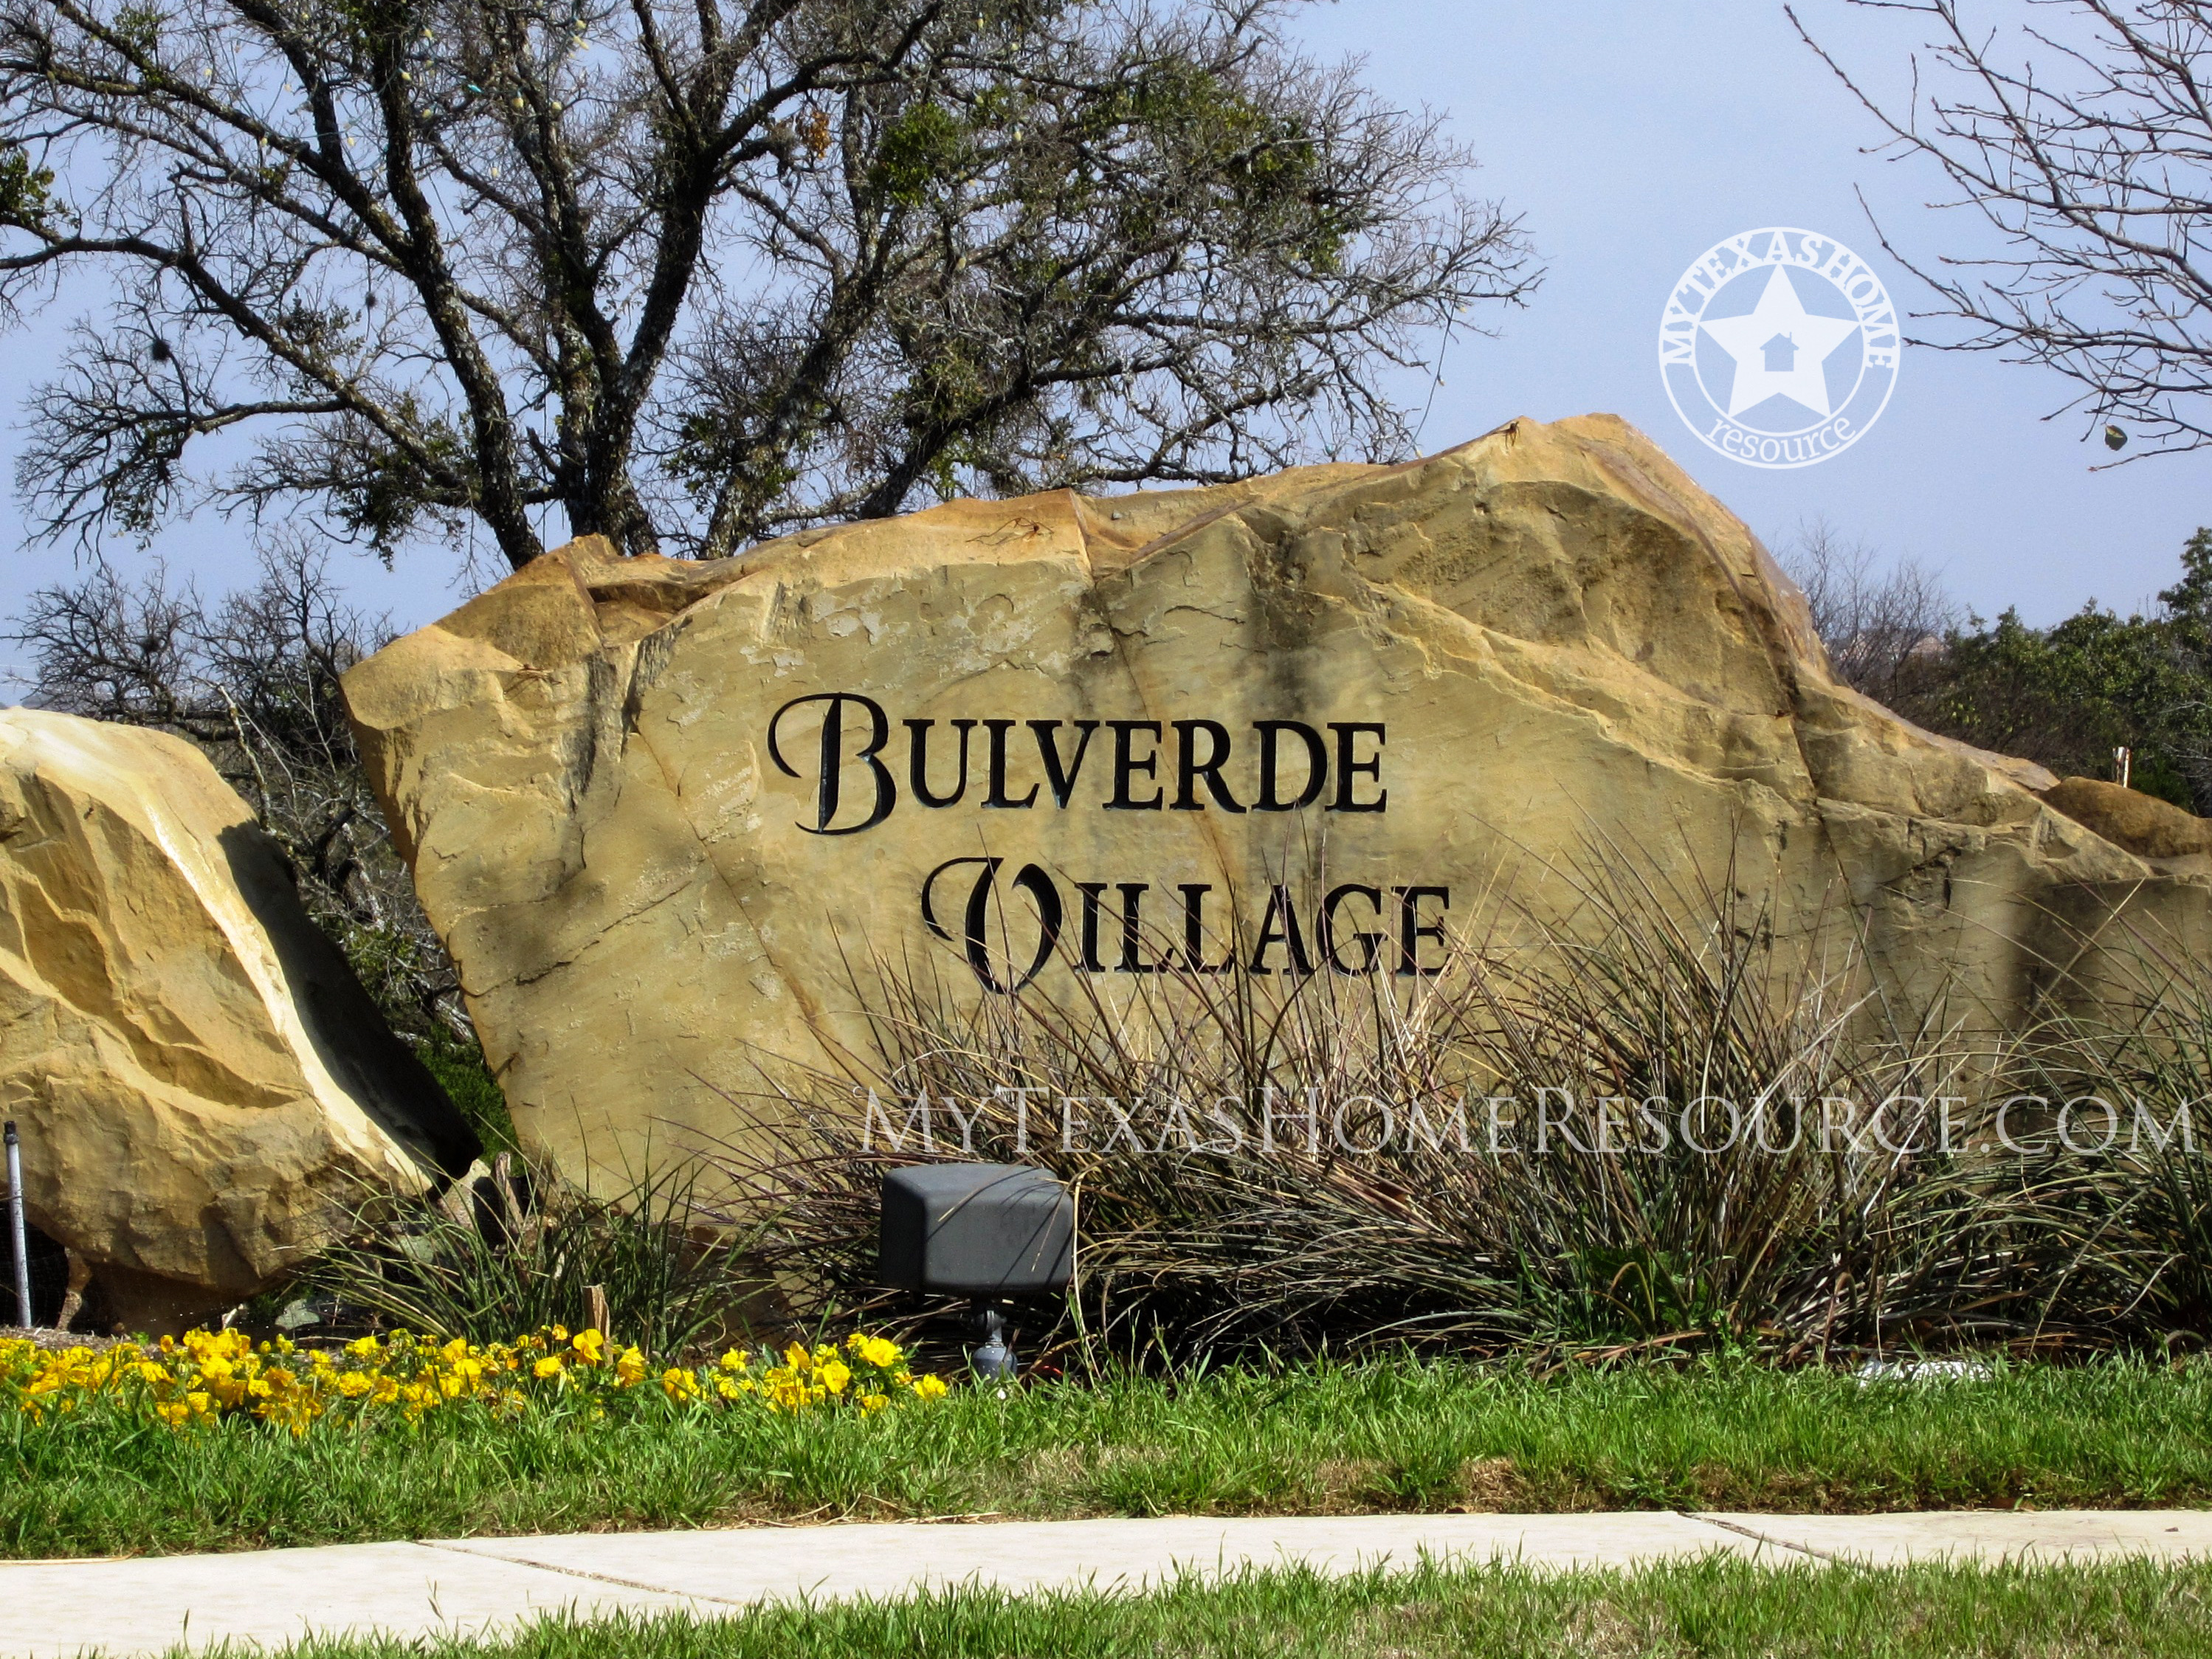 Bulverde村-网上正规的彩票网站，德克萨斯州